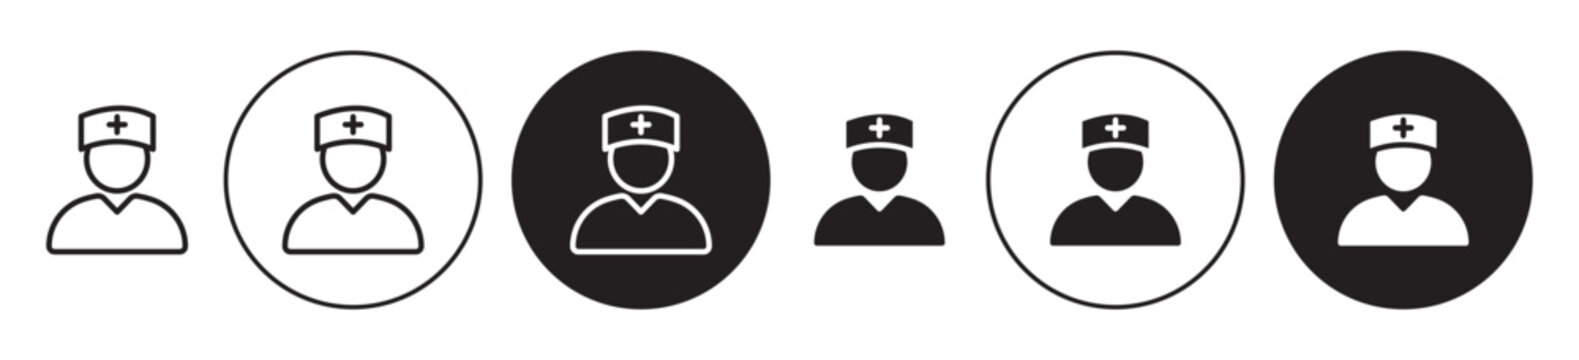 Nurse icon set. hospital woman or girl nurse vector symbol in black color.